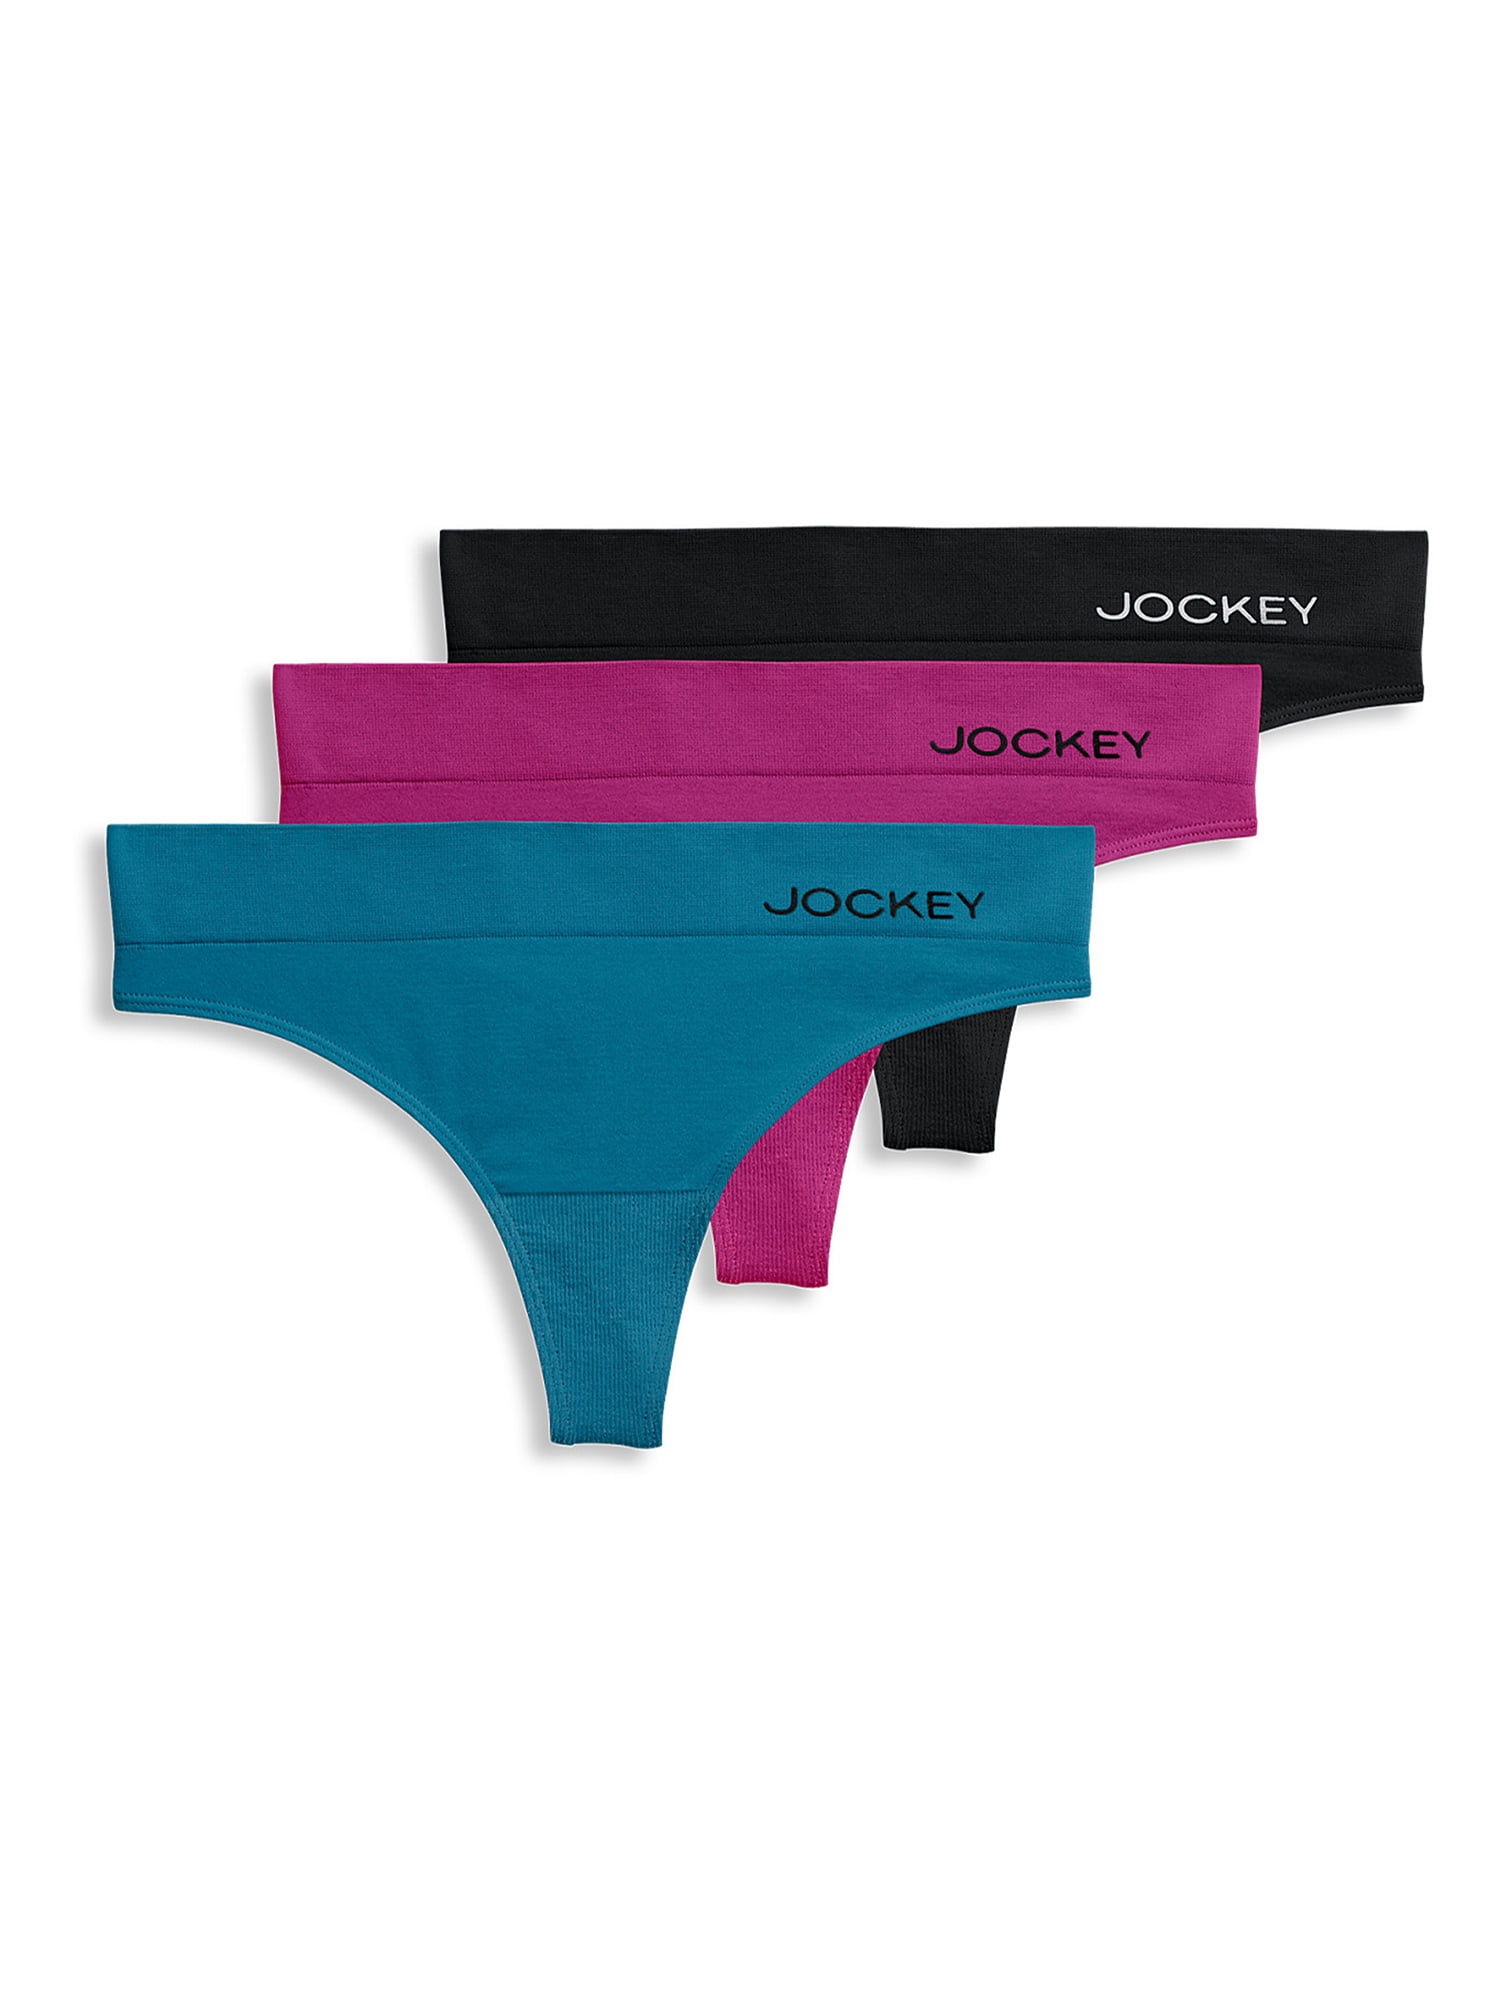 Jockey - Jockey Basic women's underwear is Here! Available online